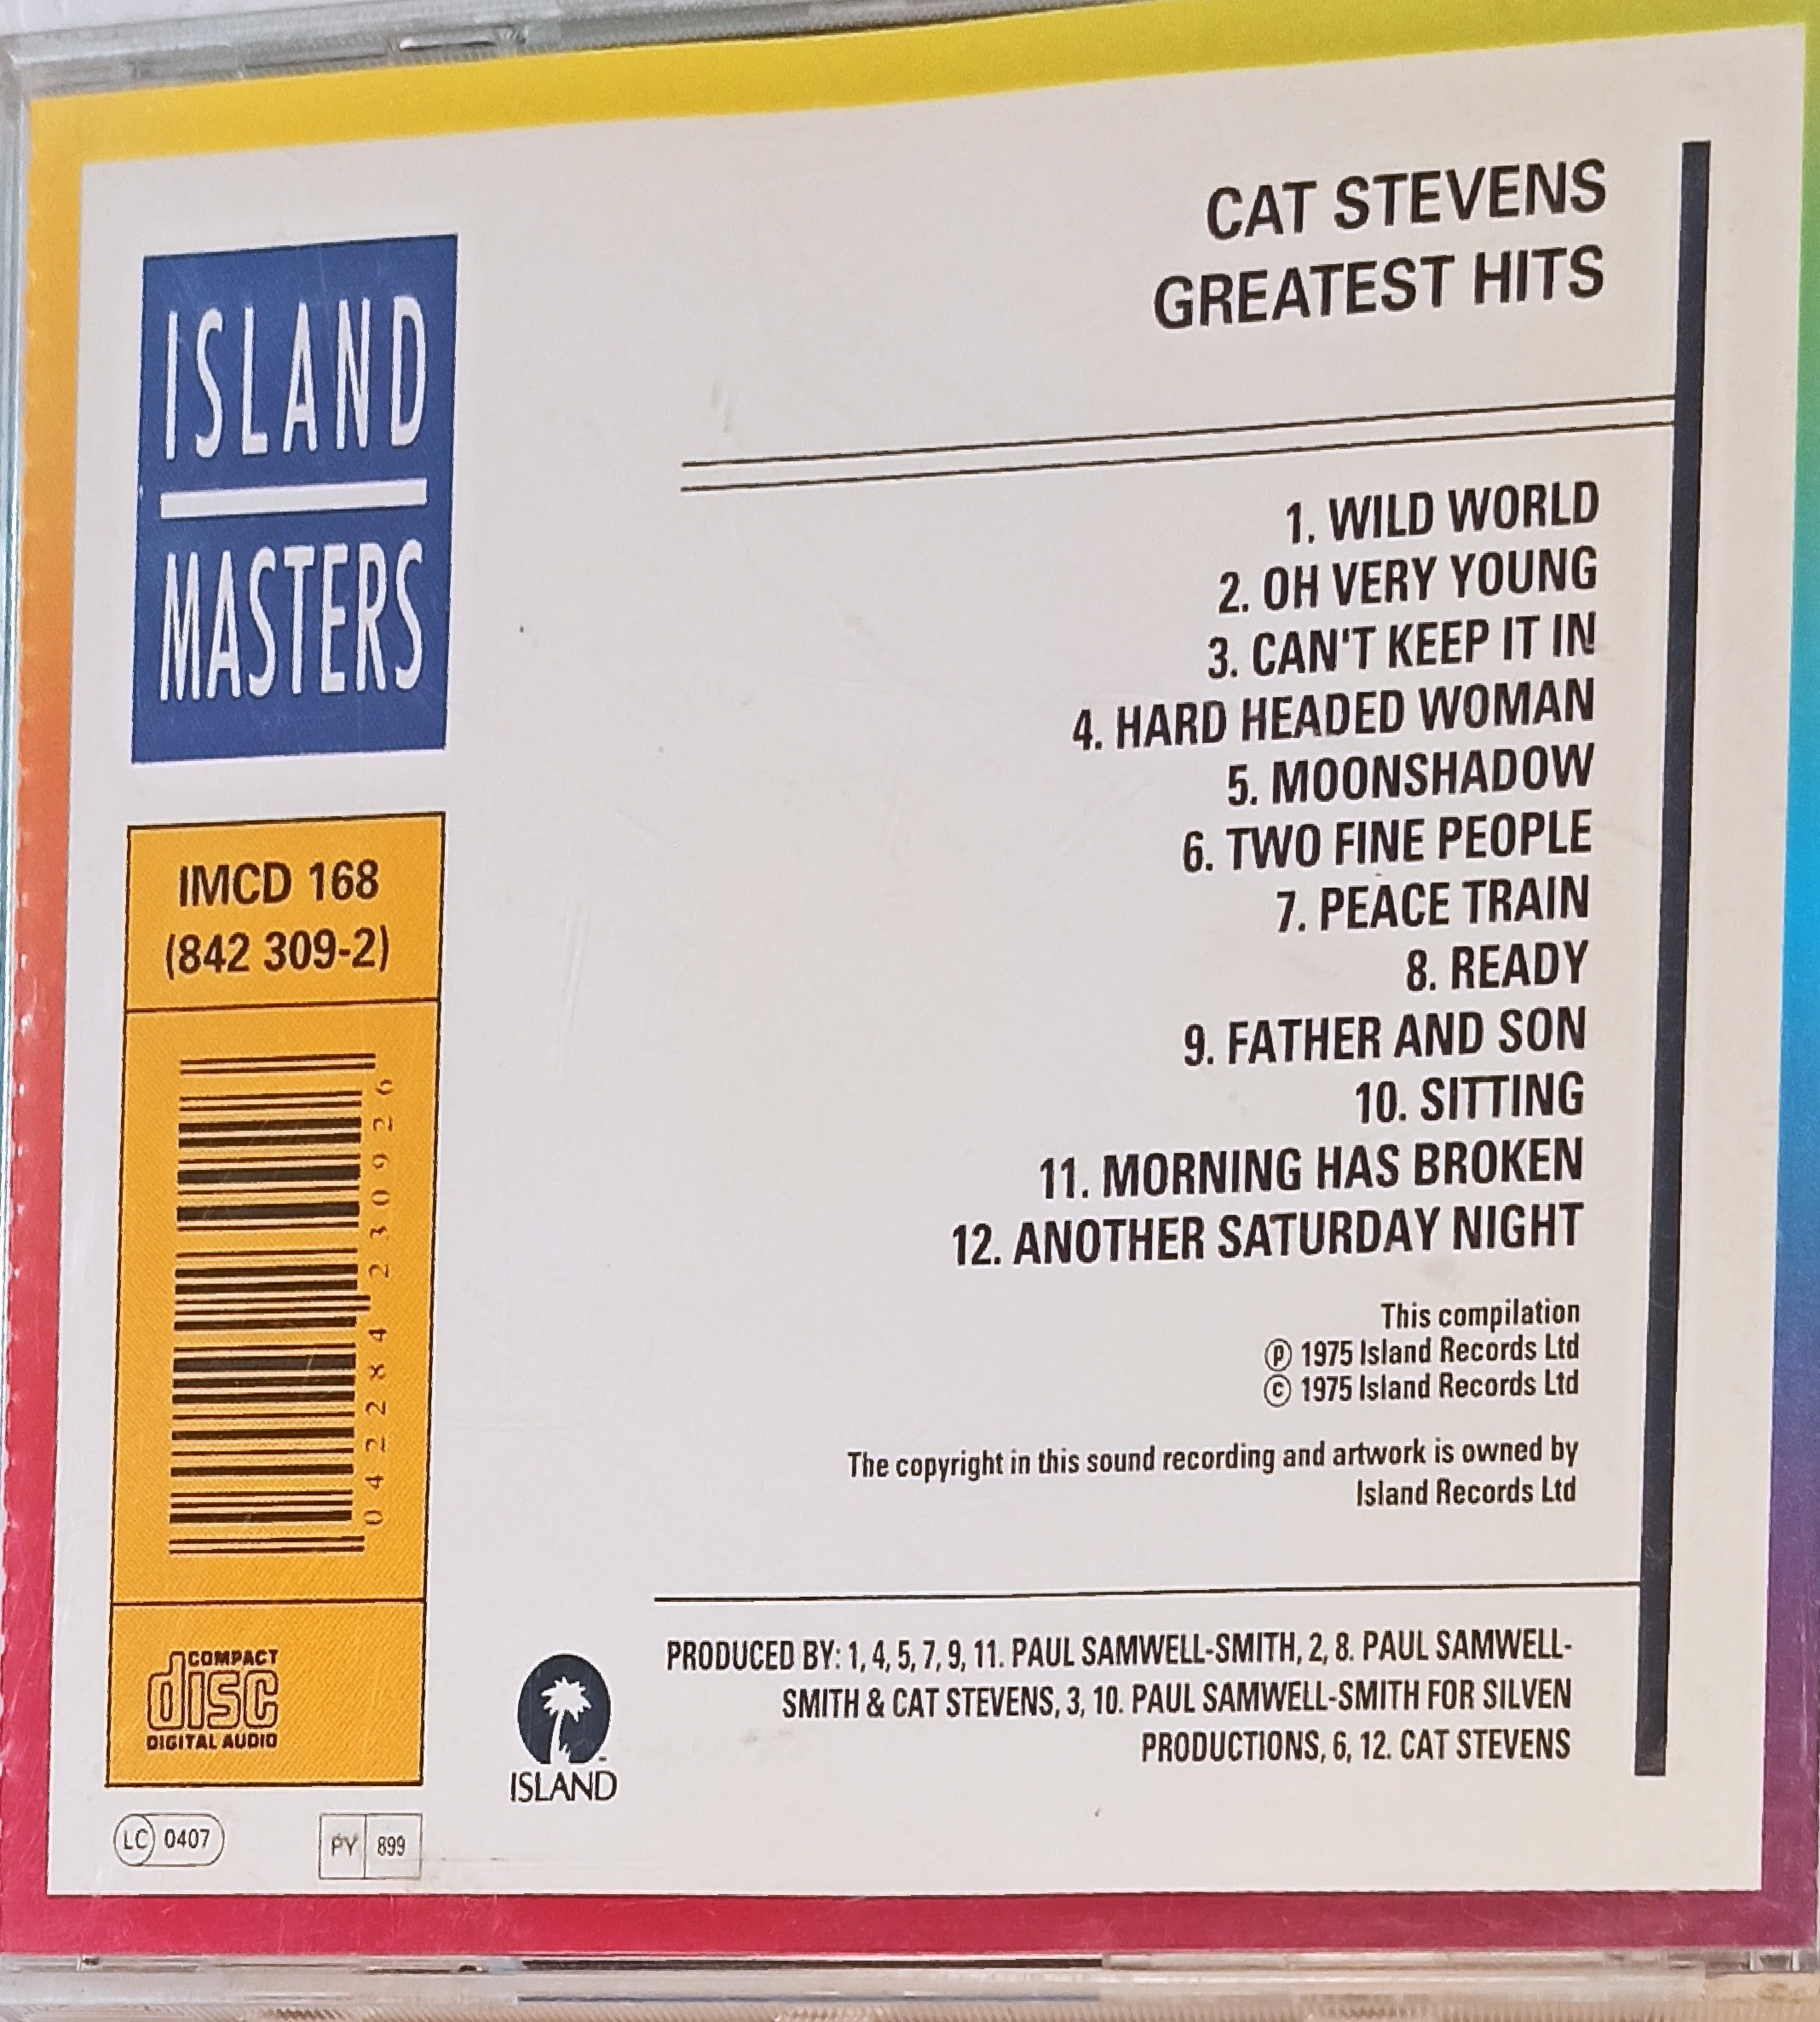 תמונה 2 ,דיסק של cat stevens  למכירה ביבנה אספנות  תקליטים ודיסקים